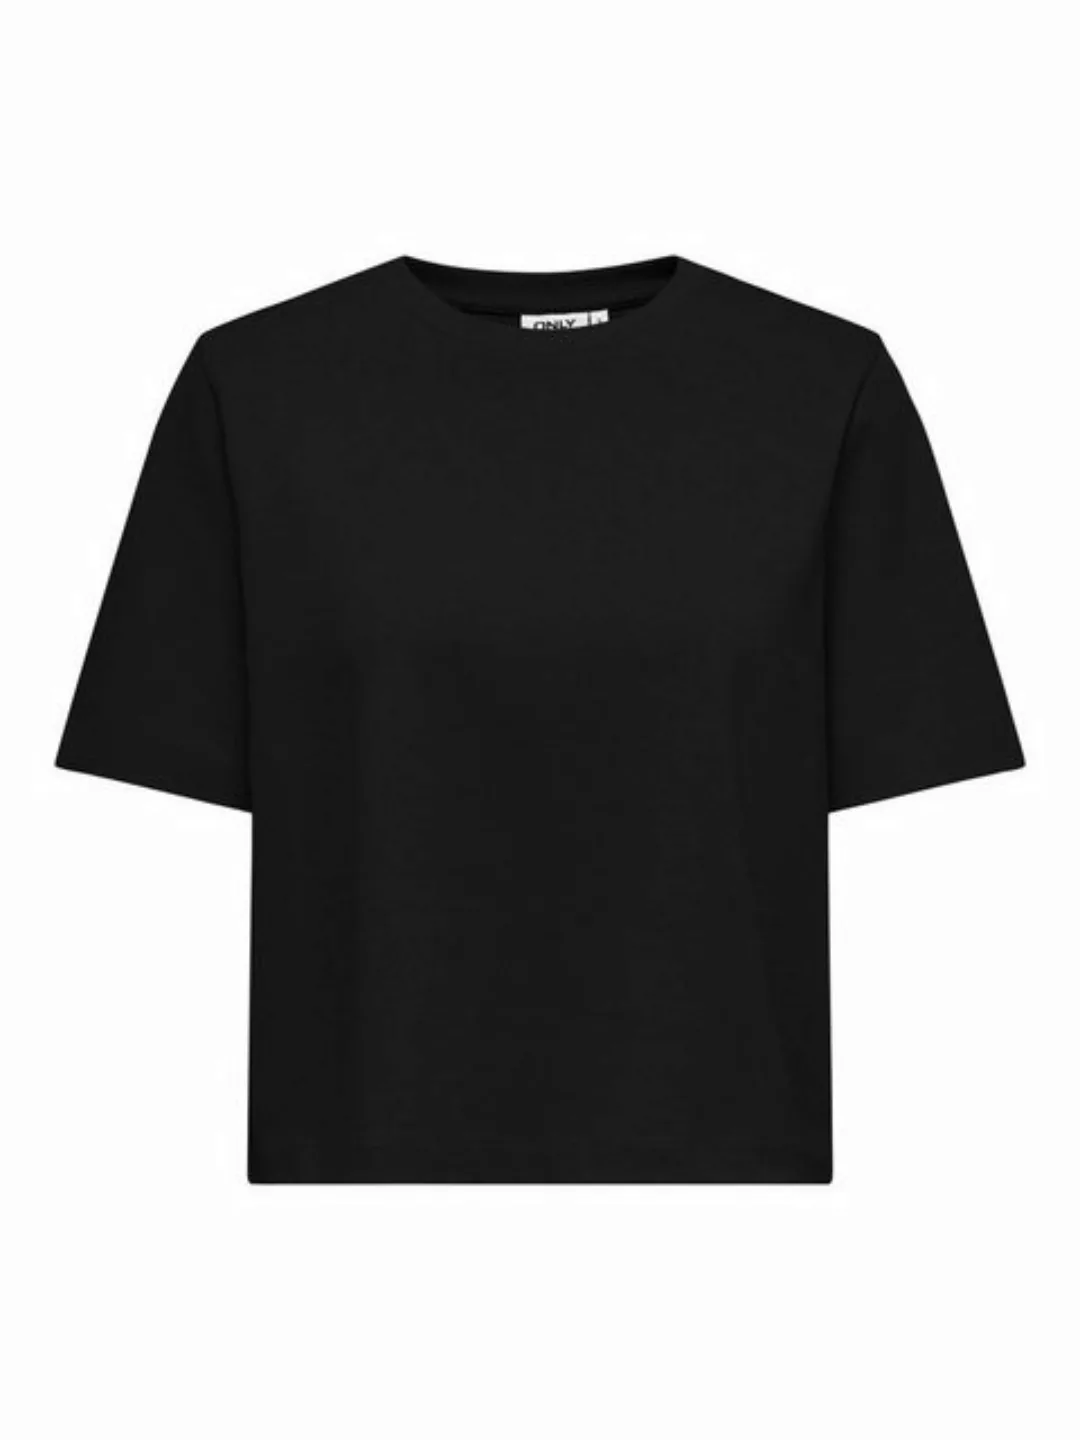 ONLY Sweatshirt ONLSILVINA S/S TOP SWT günstig online kaufen